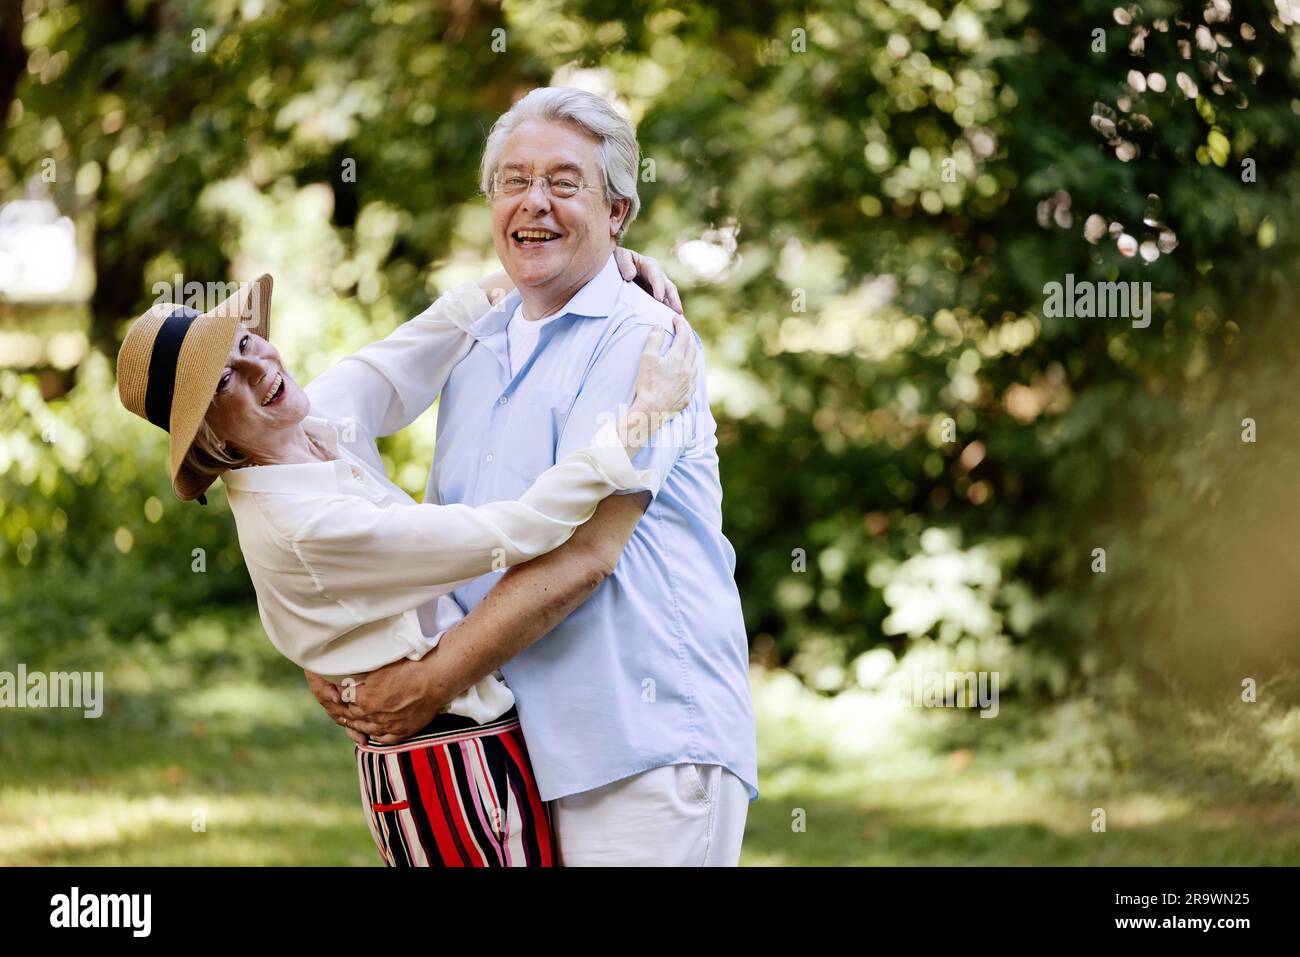 Germania, coppia anziana vestita per l'estate, abbracciata e divertita nella natura Foto Stock